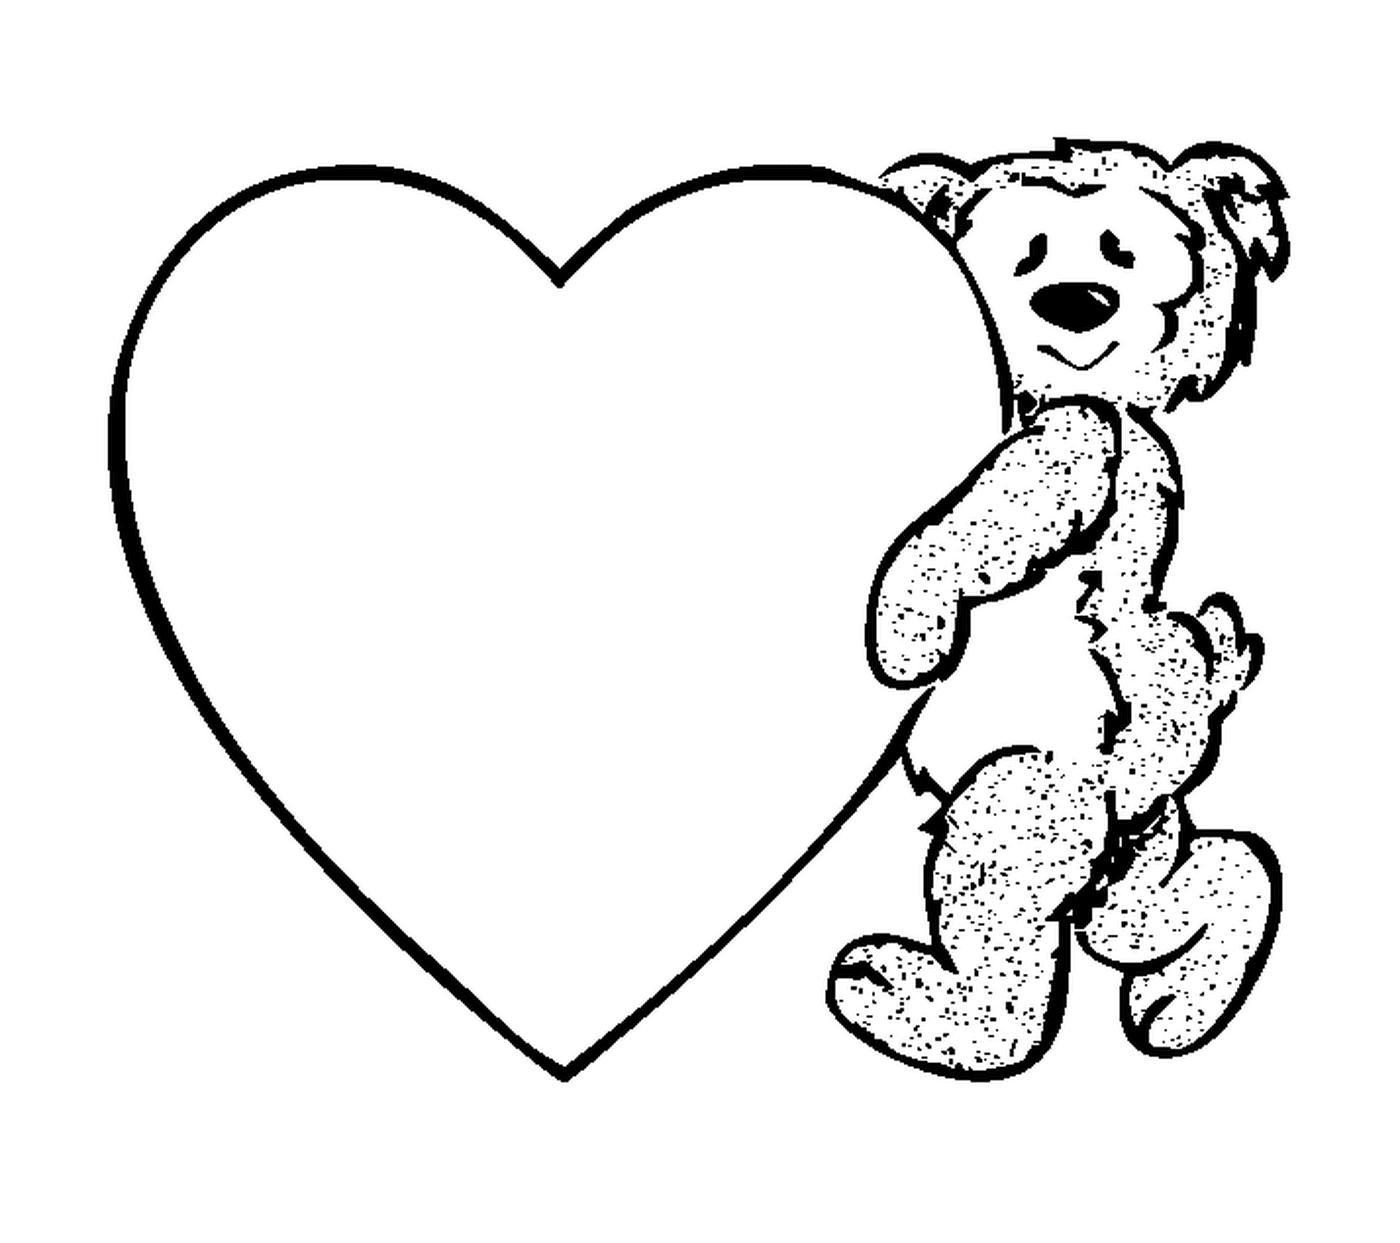  Ein Teddybär, der ein Herz hält 